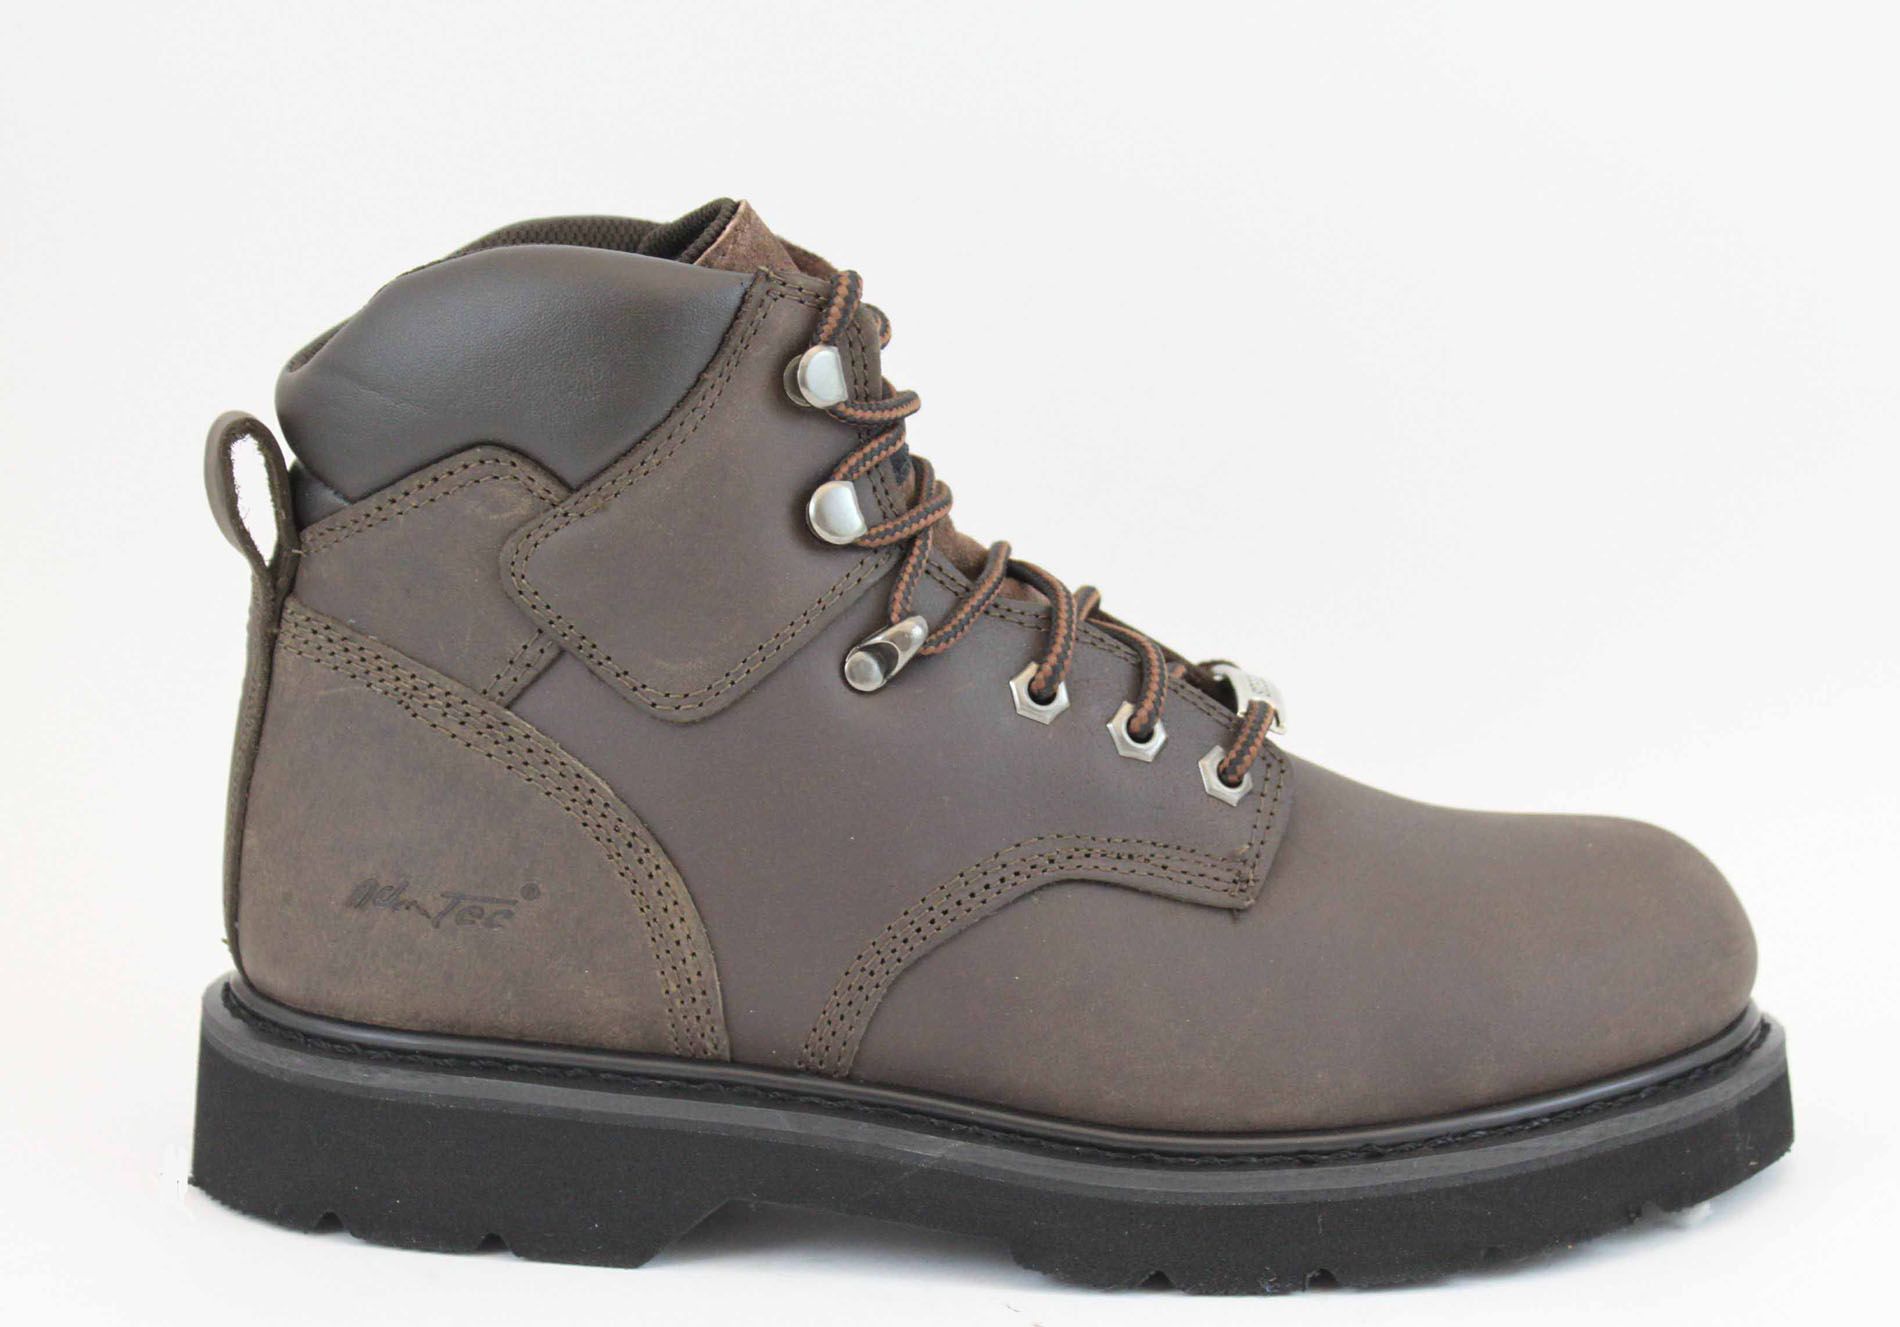 AdTec Men's 6" Steel Toe Work Boots 9328 Wide Width Available - Dark Brown